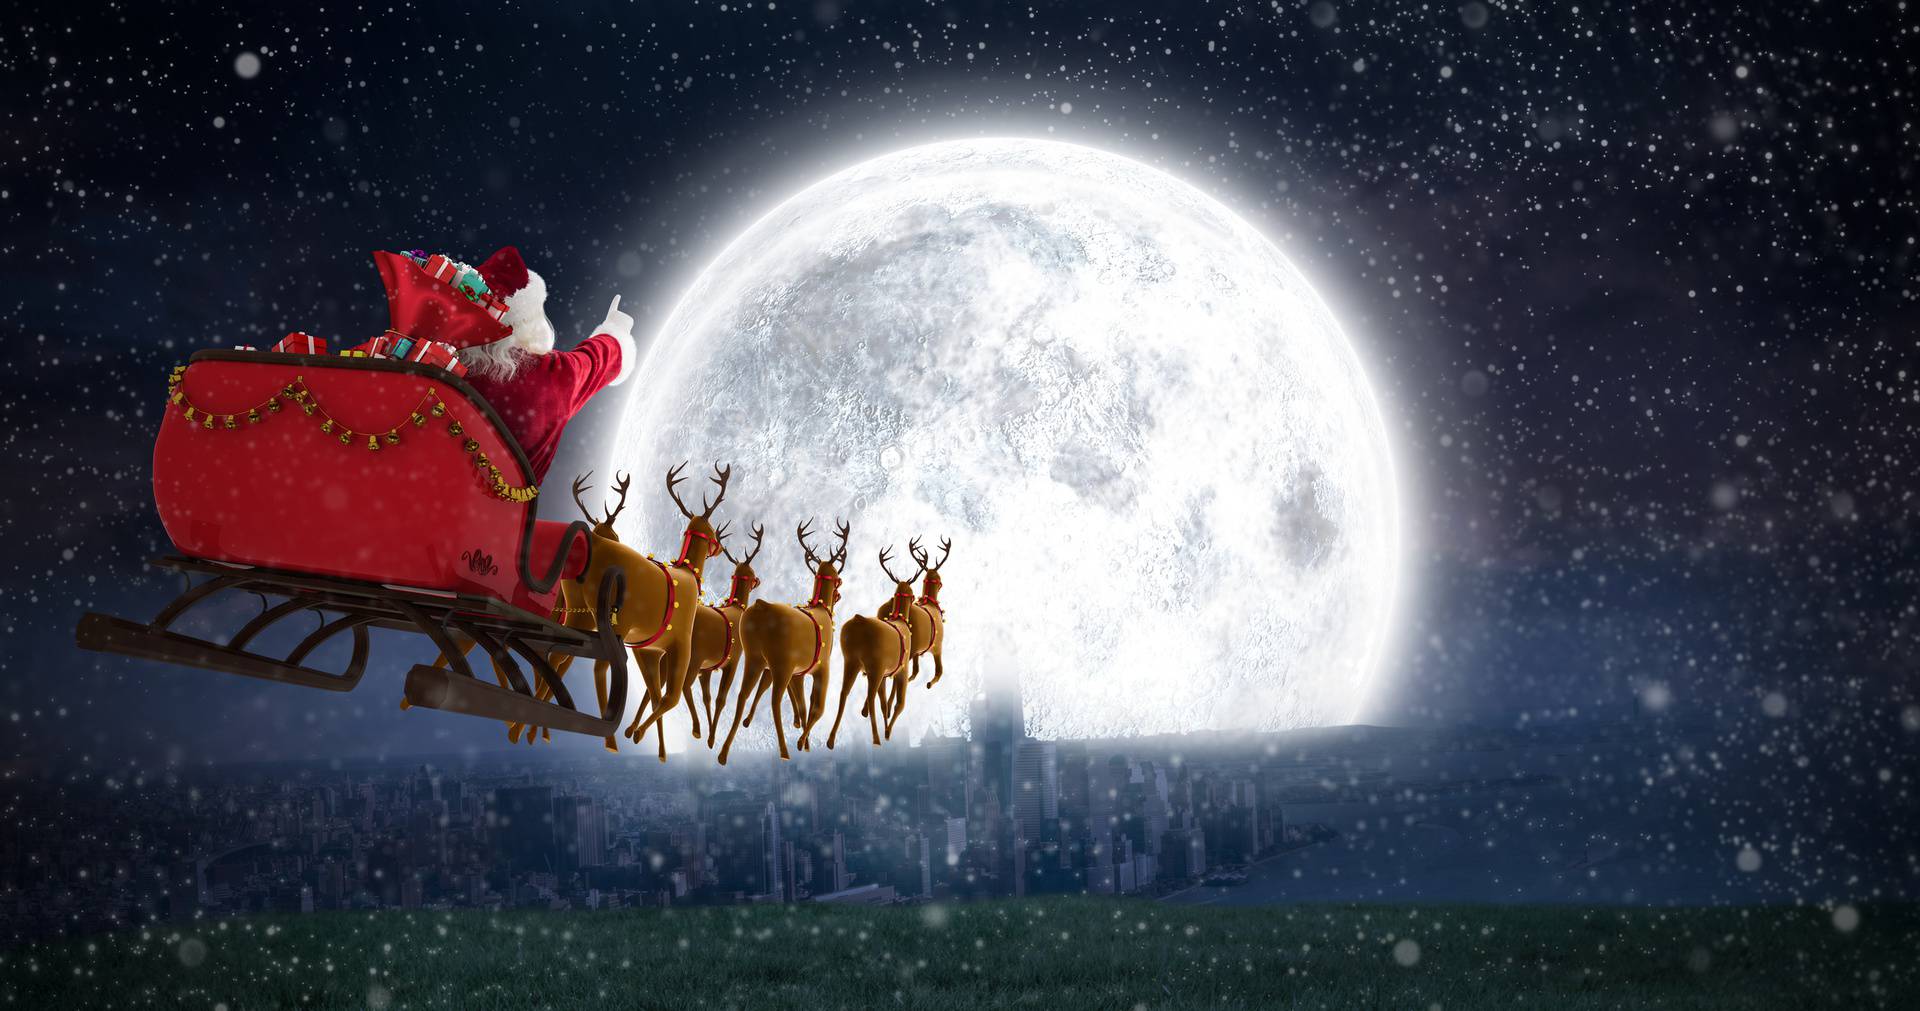 Pratite uživo putovanje Djeda Božićnjaka na putu oko svijeta